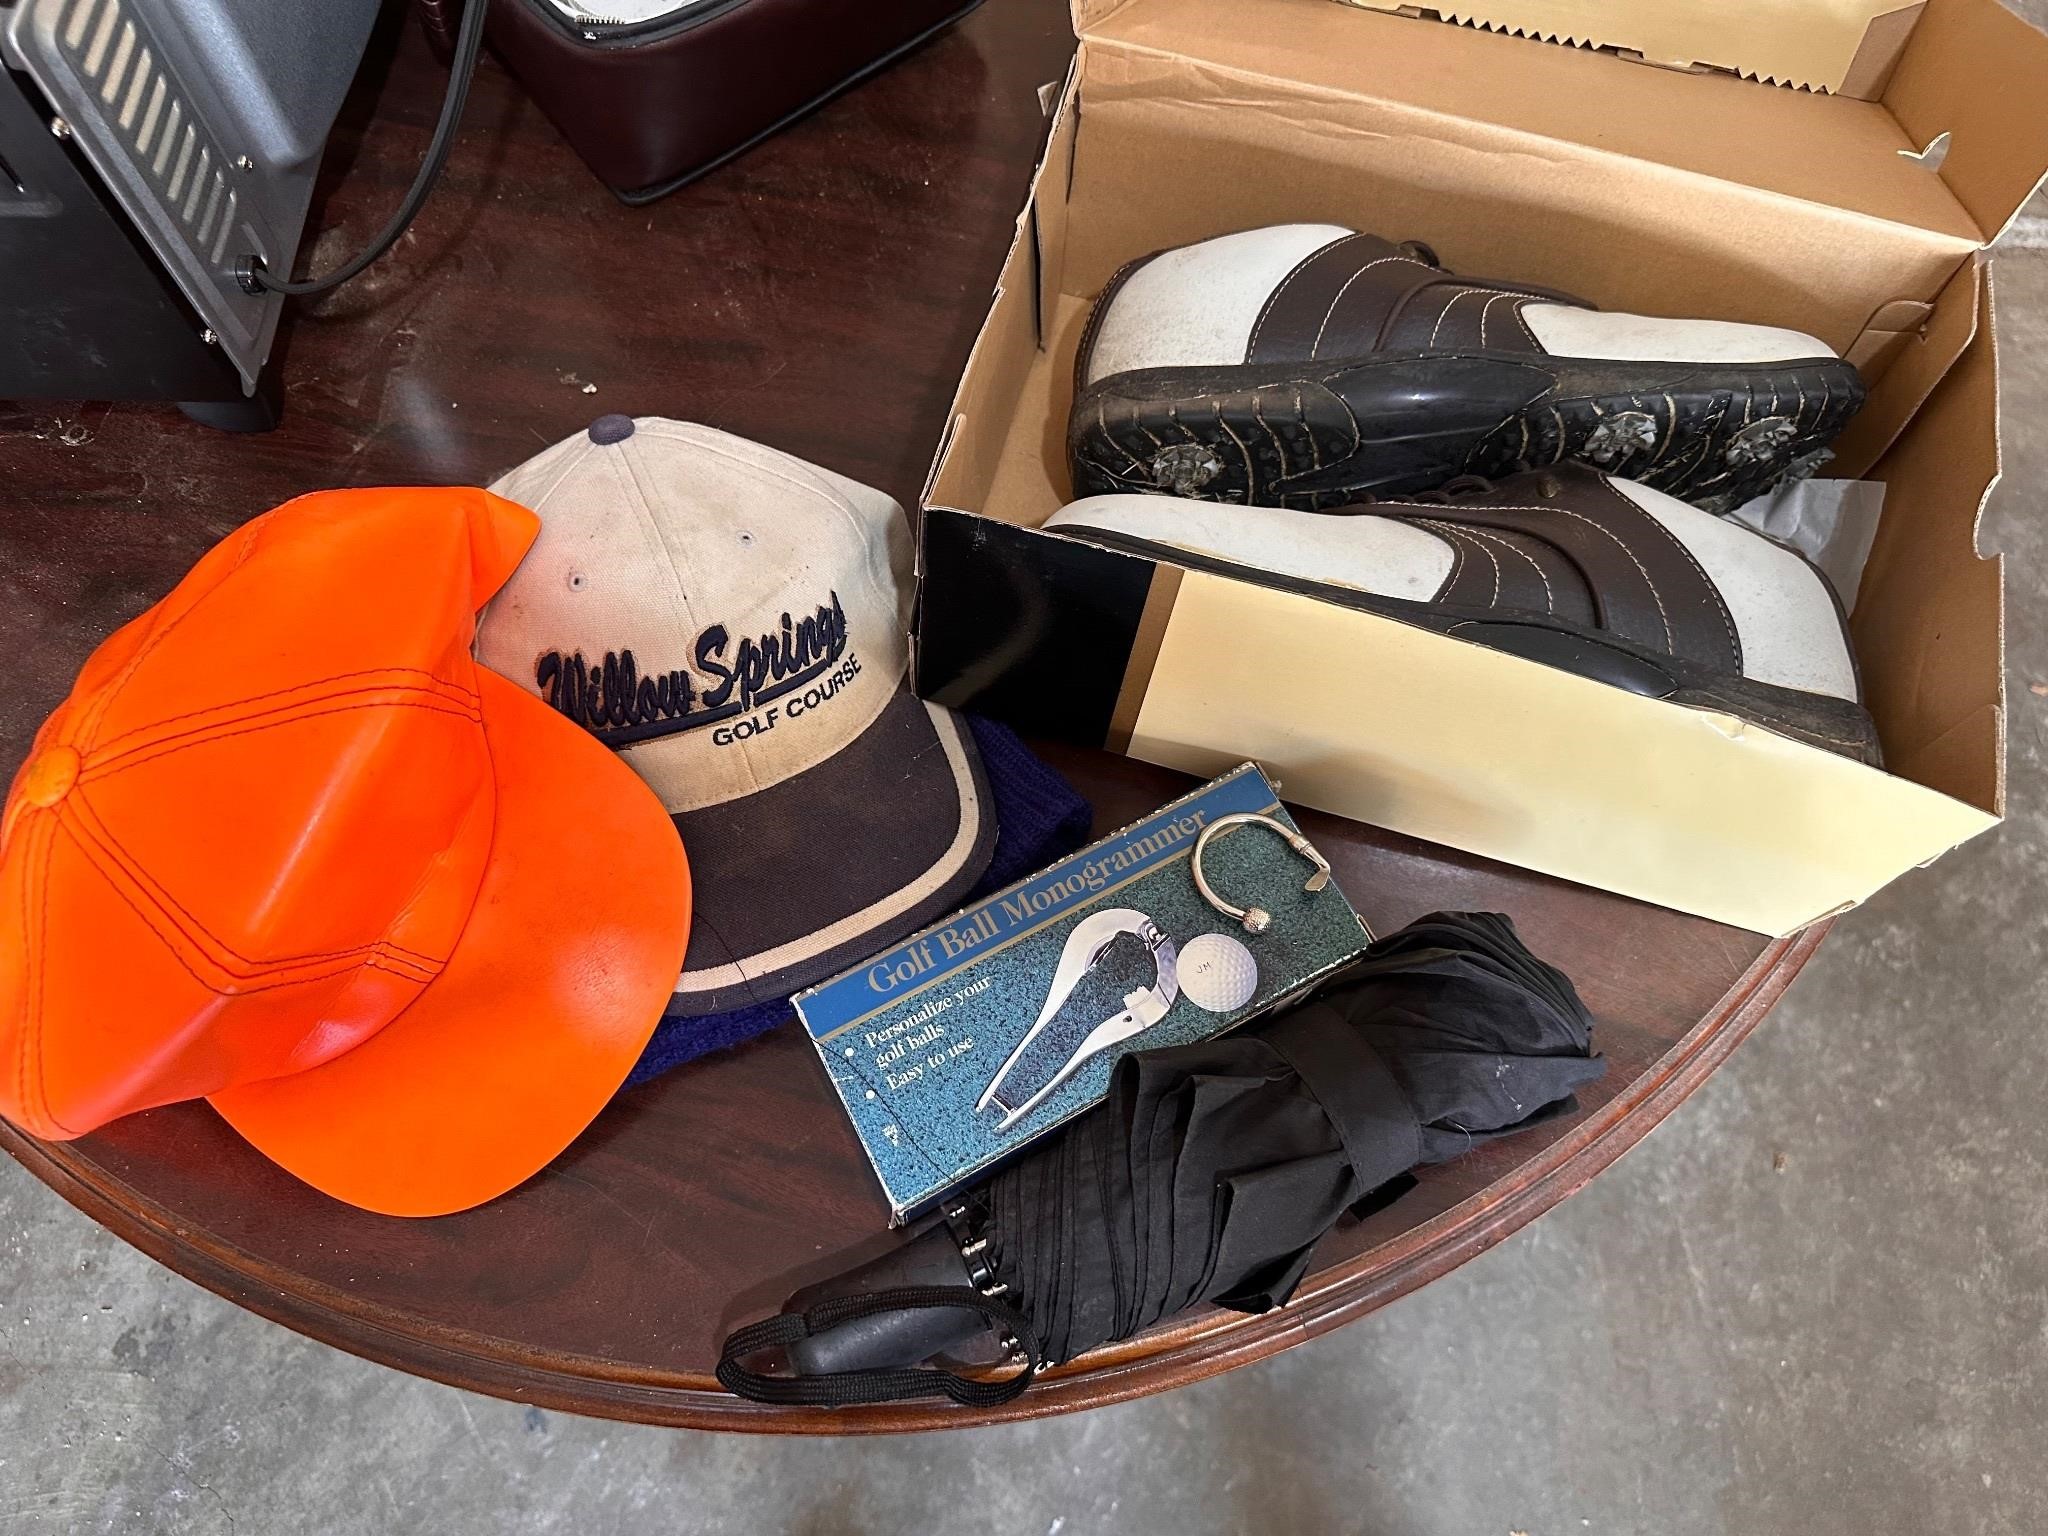 Austin Golf golf shoes, golf ball monogrammer